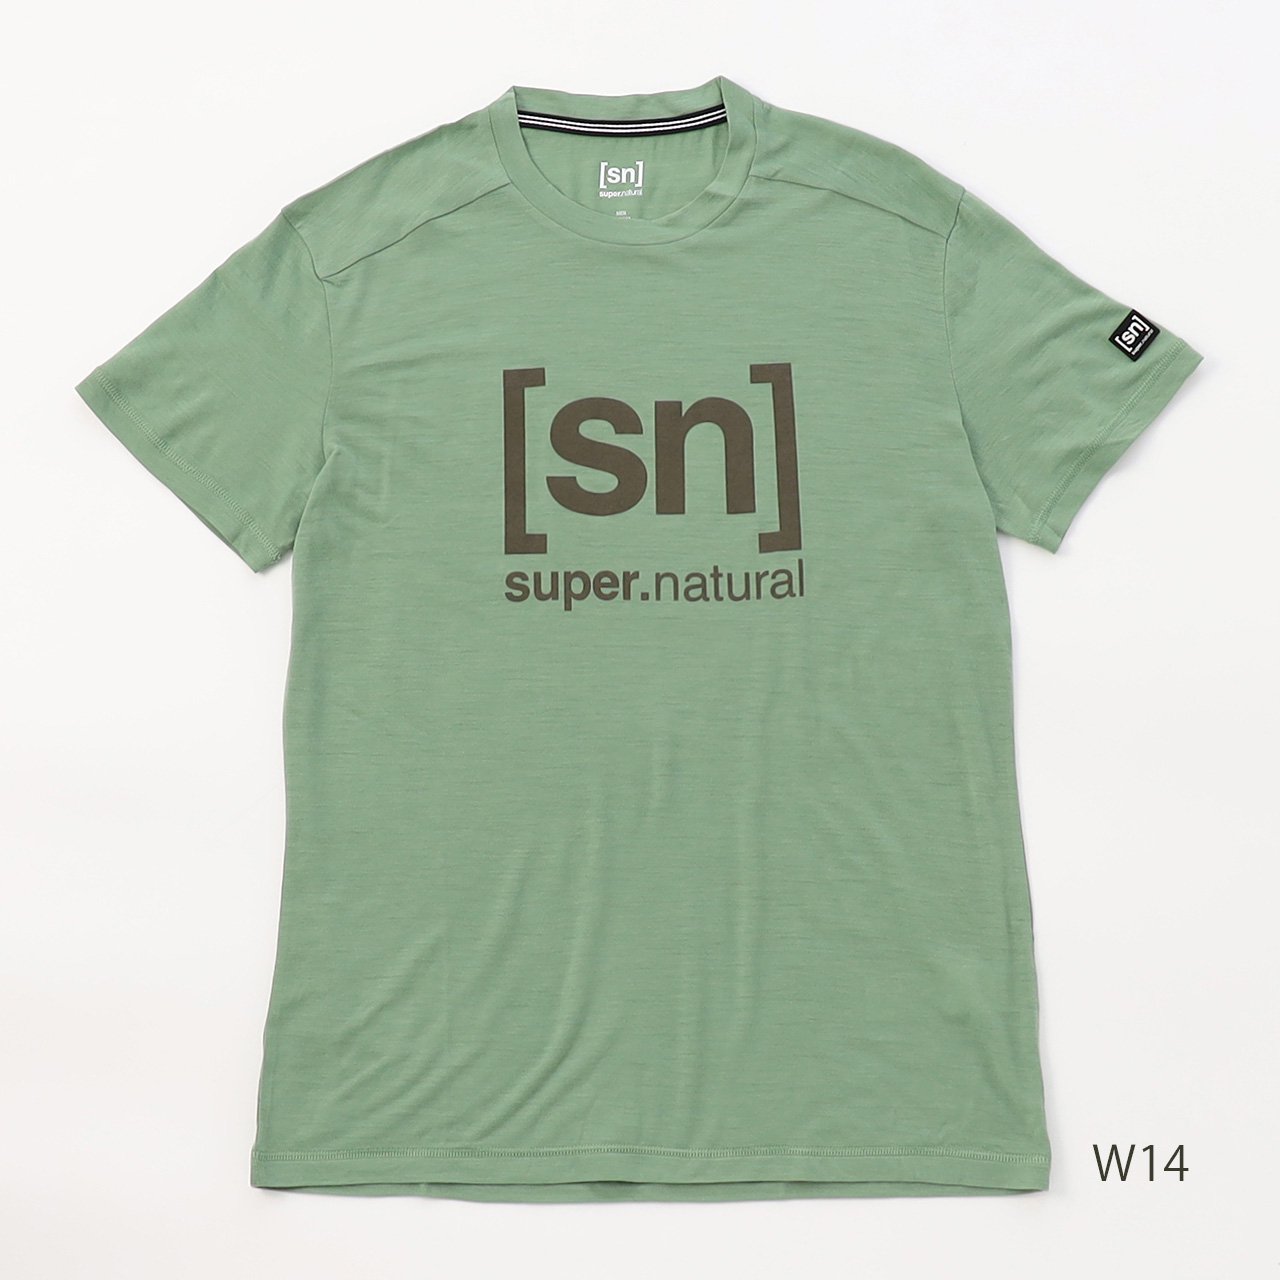 M [sn]ロゴTシャツ - [sn] super.natural - スポーツ・アウトドア